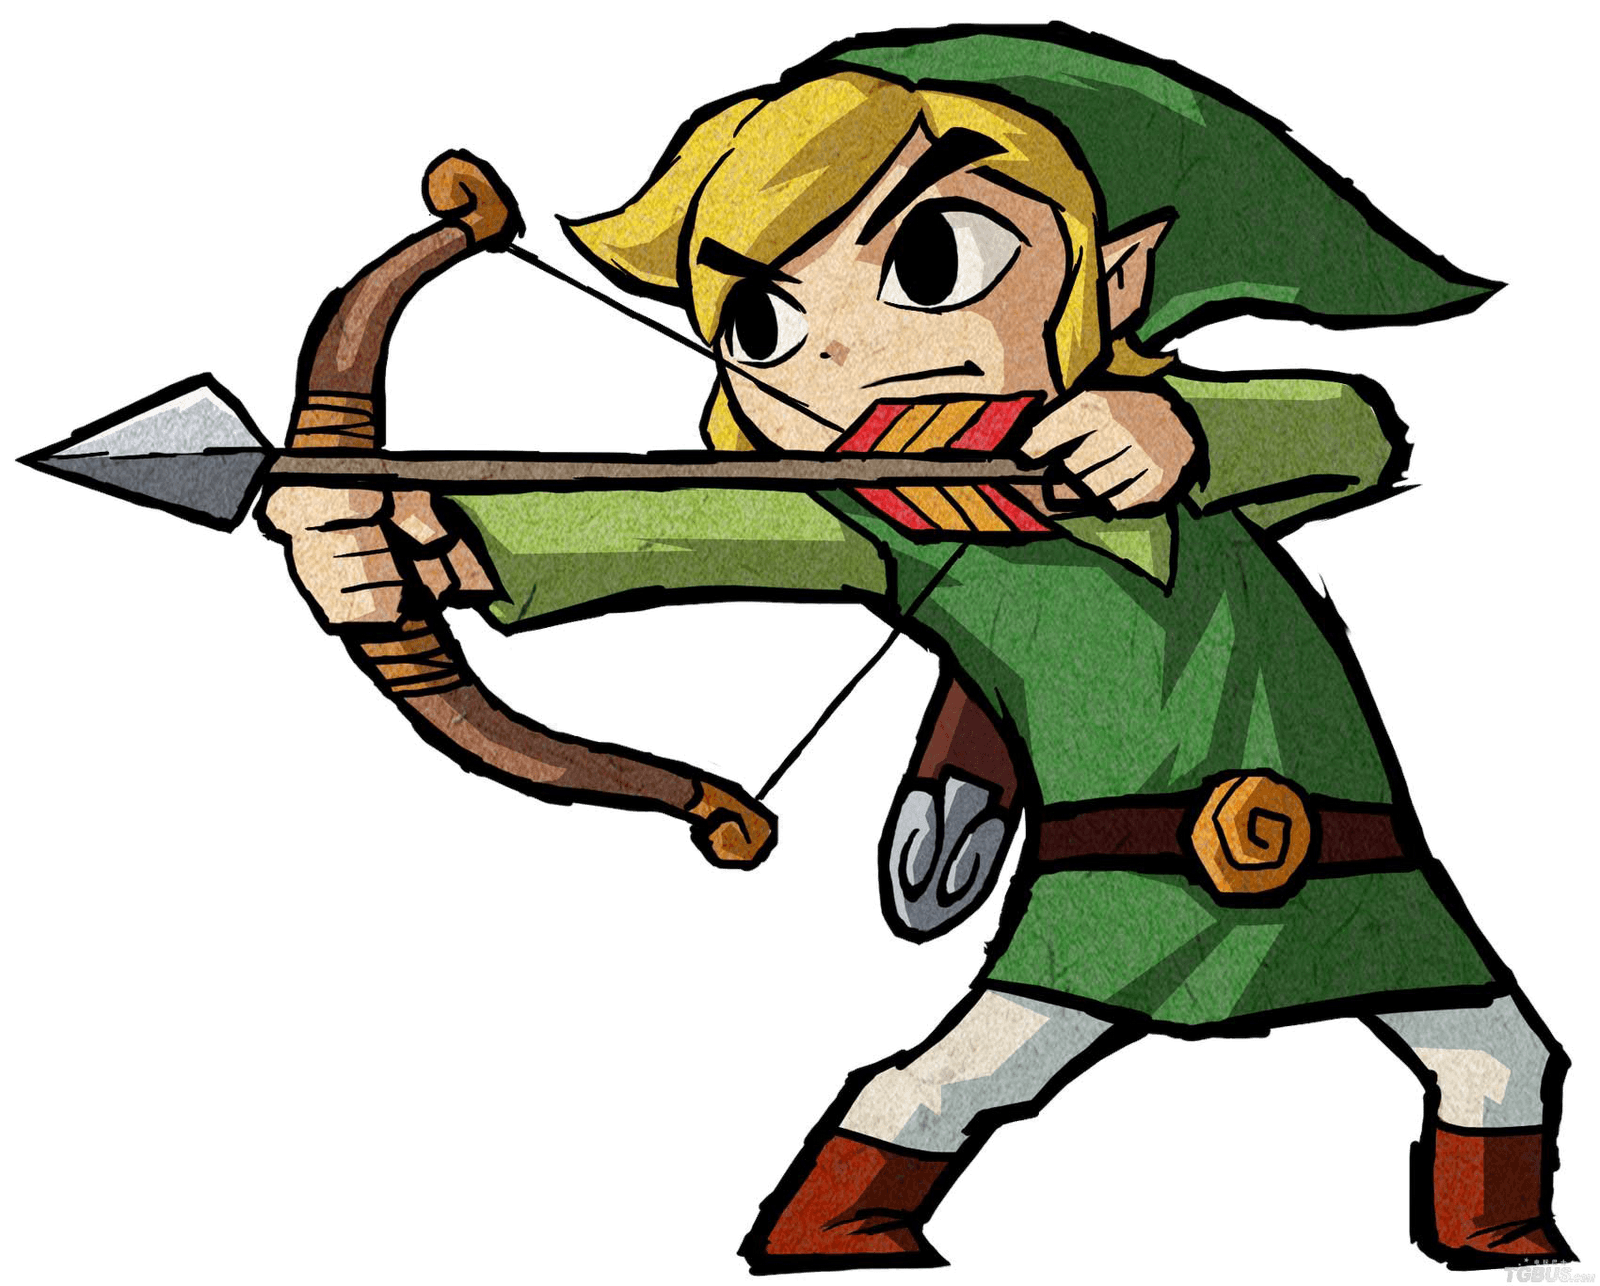 Learned link link. Линк из the Legend of Zelda the Wind Waker. Link Zelda Wind Waker 4. Toon link Wind Waker. The Legend of Zelda Wind Waker link.